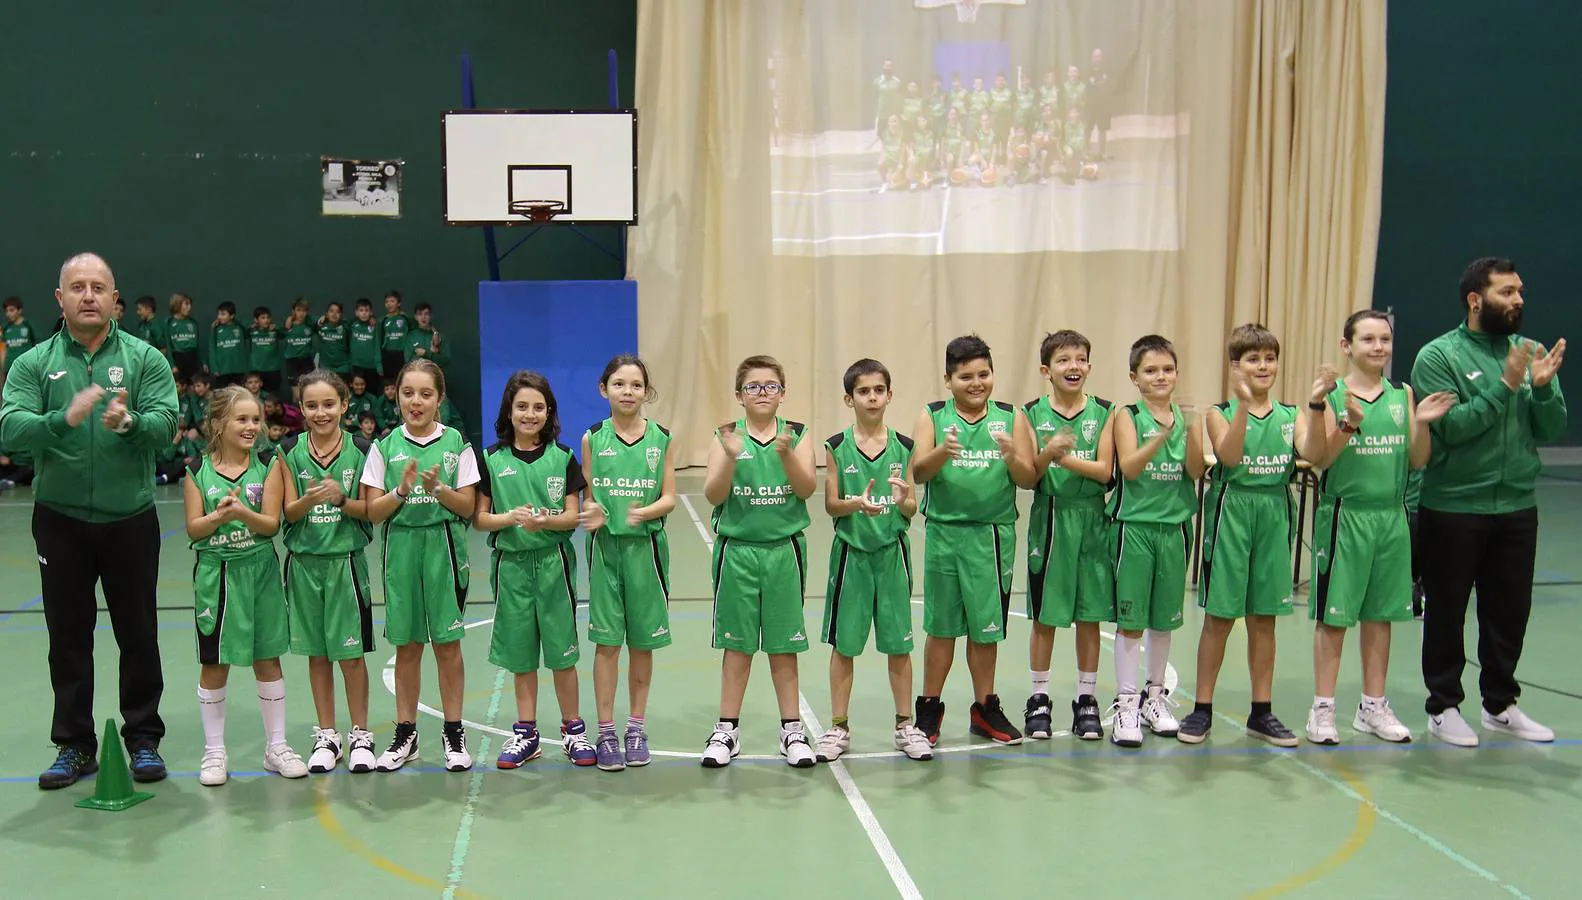 El Club Deportivo Claret reúne más de 400 deportistas con edades comprendidas entre los 5 y los 18 años